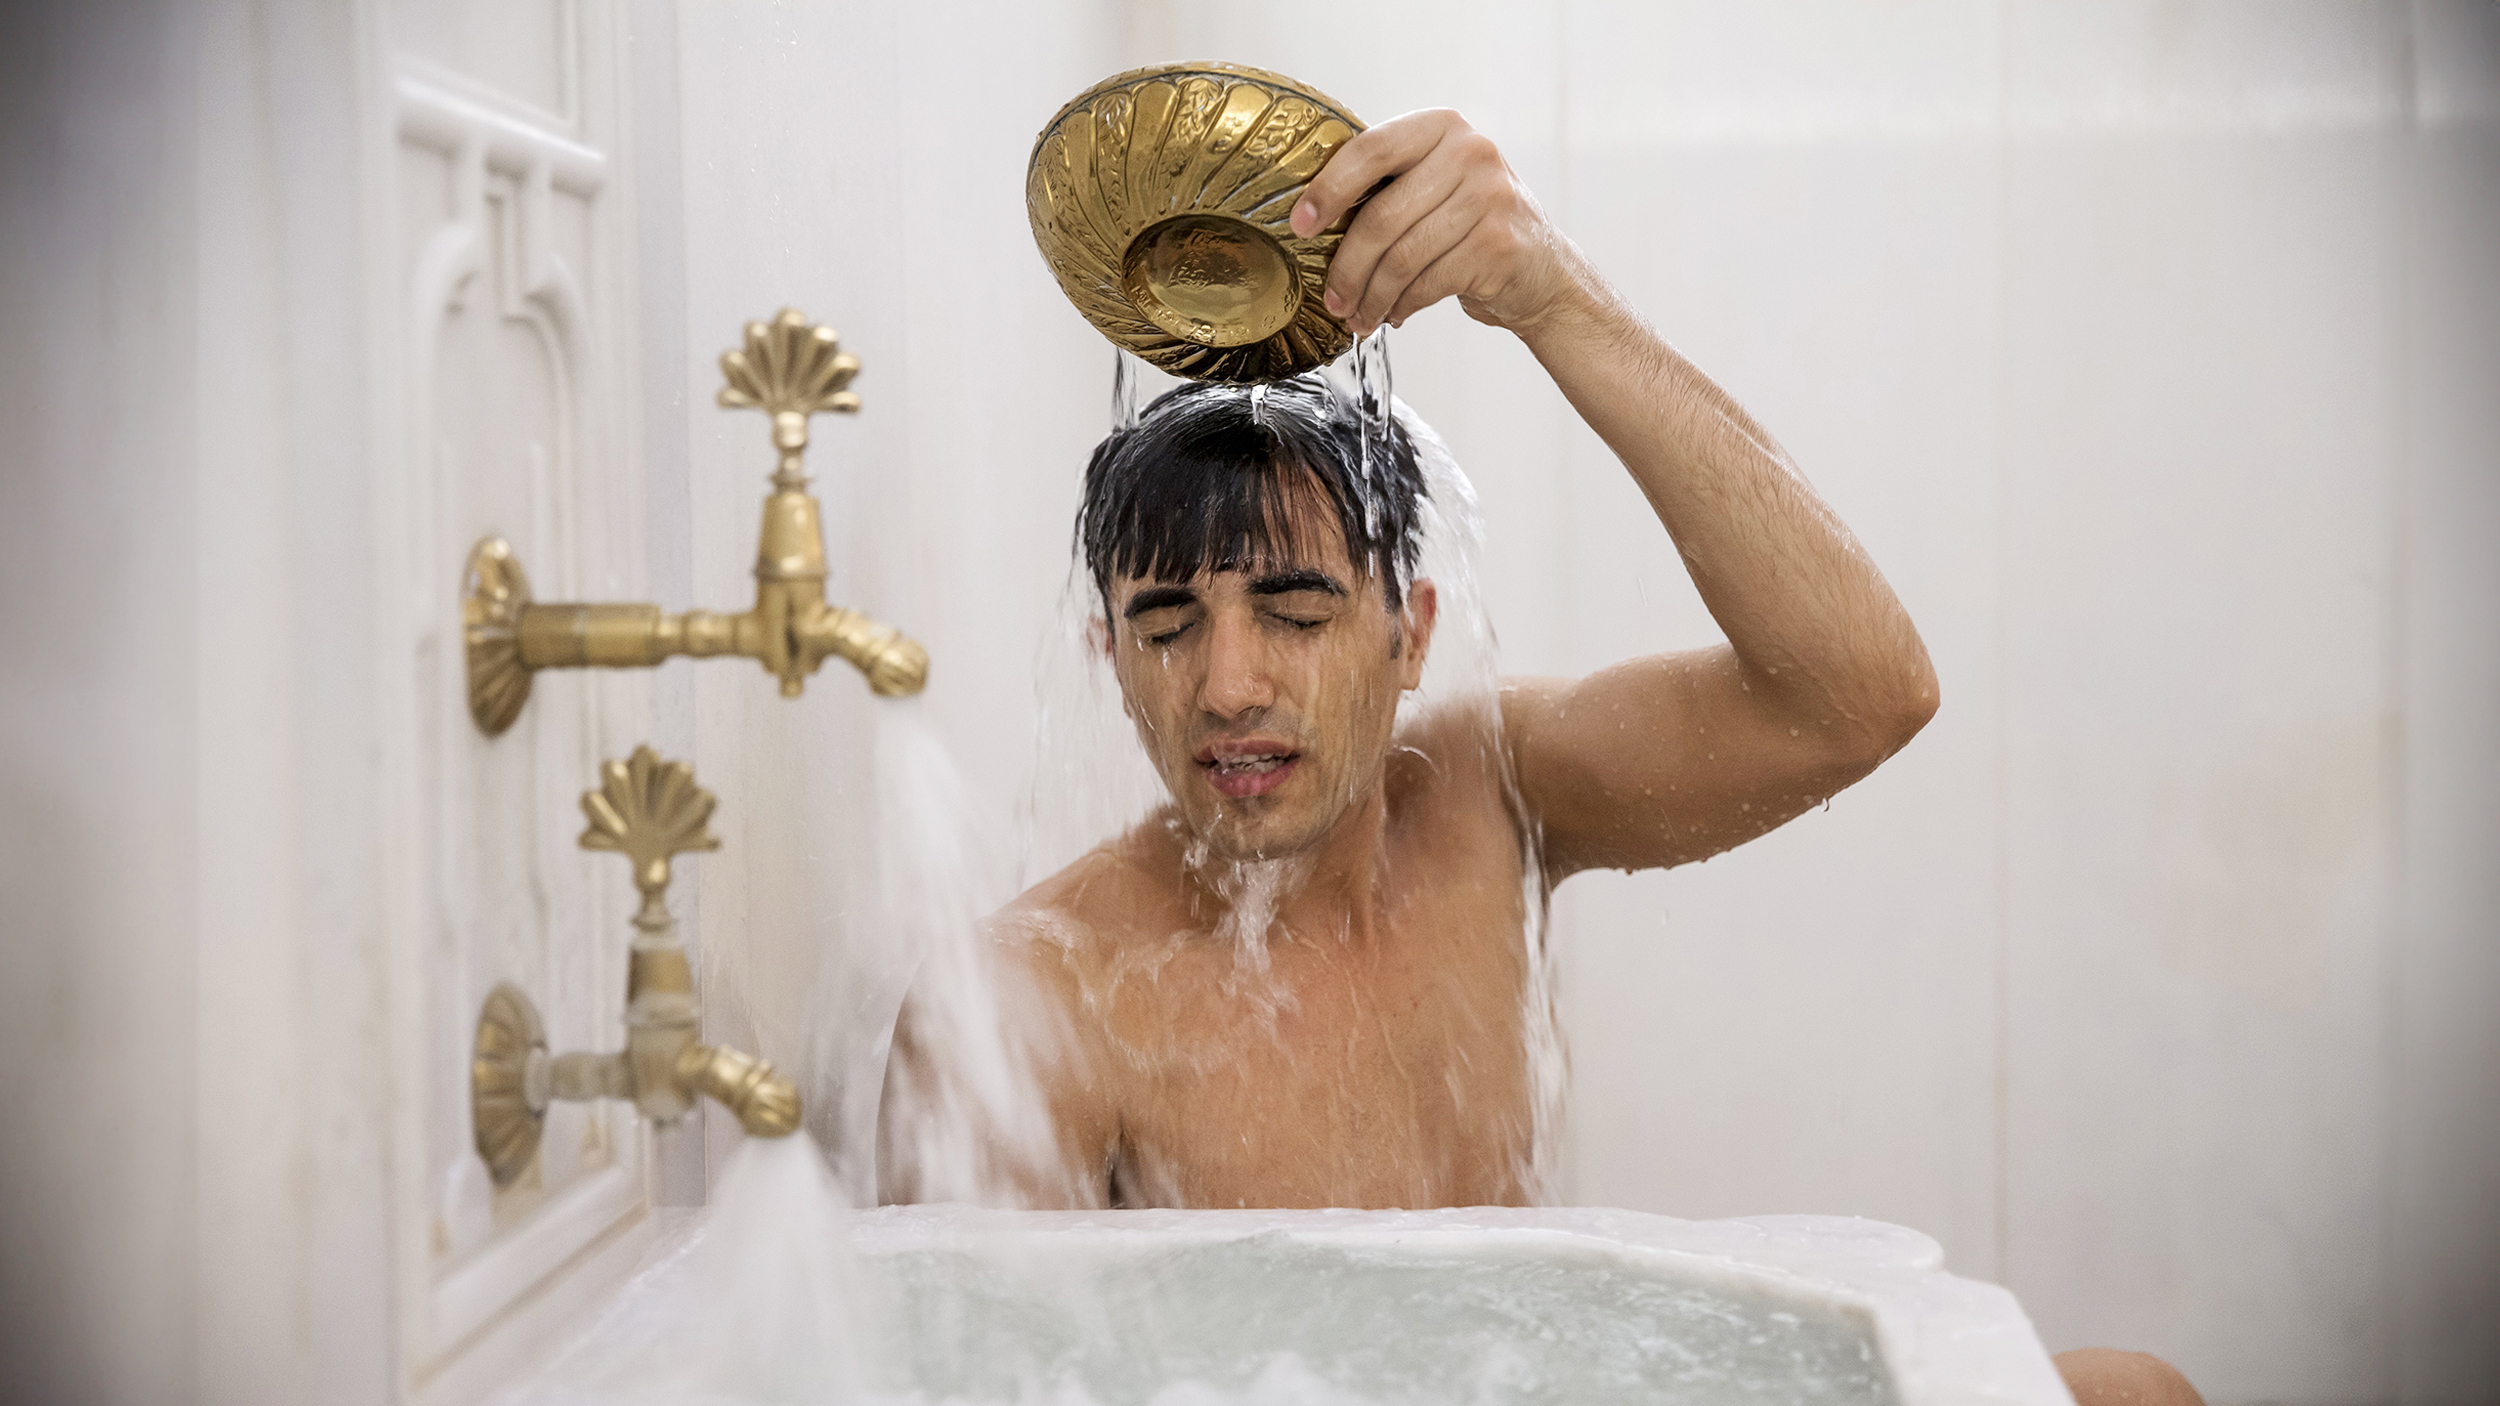 A man is taking a bath in a Thermae Romae-style bathtub.